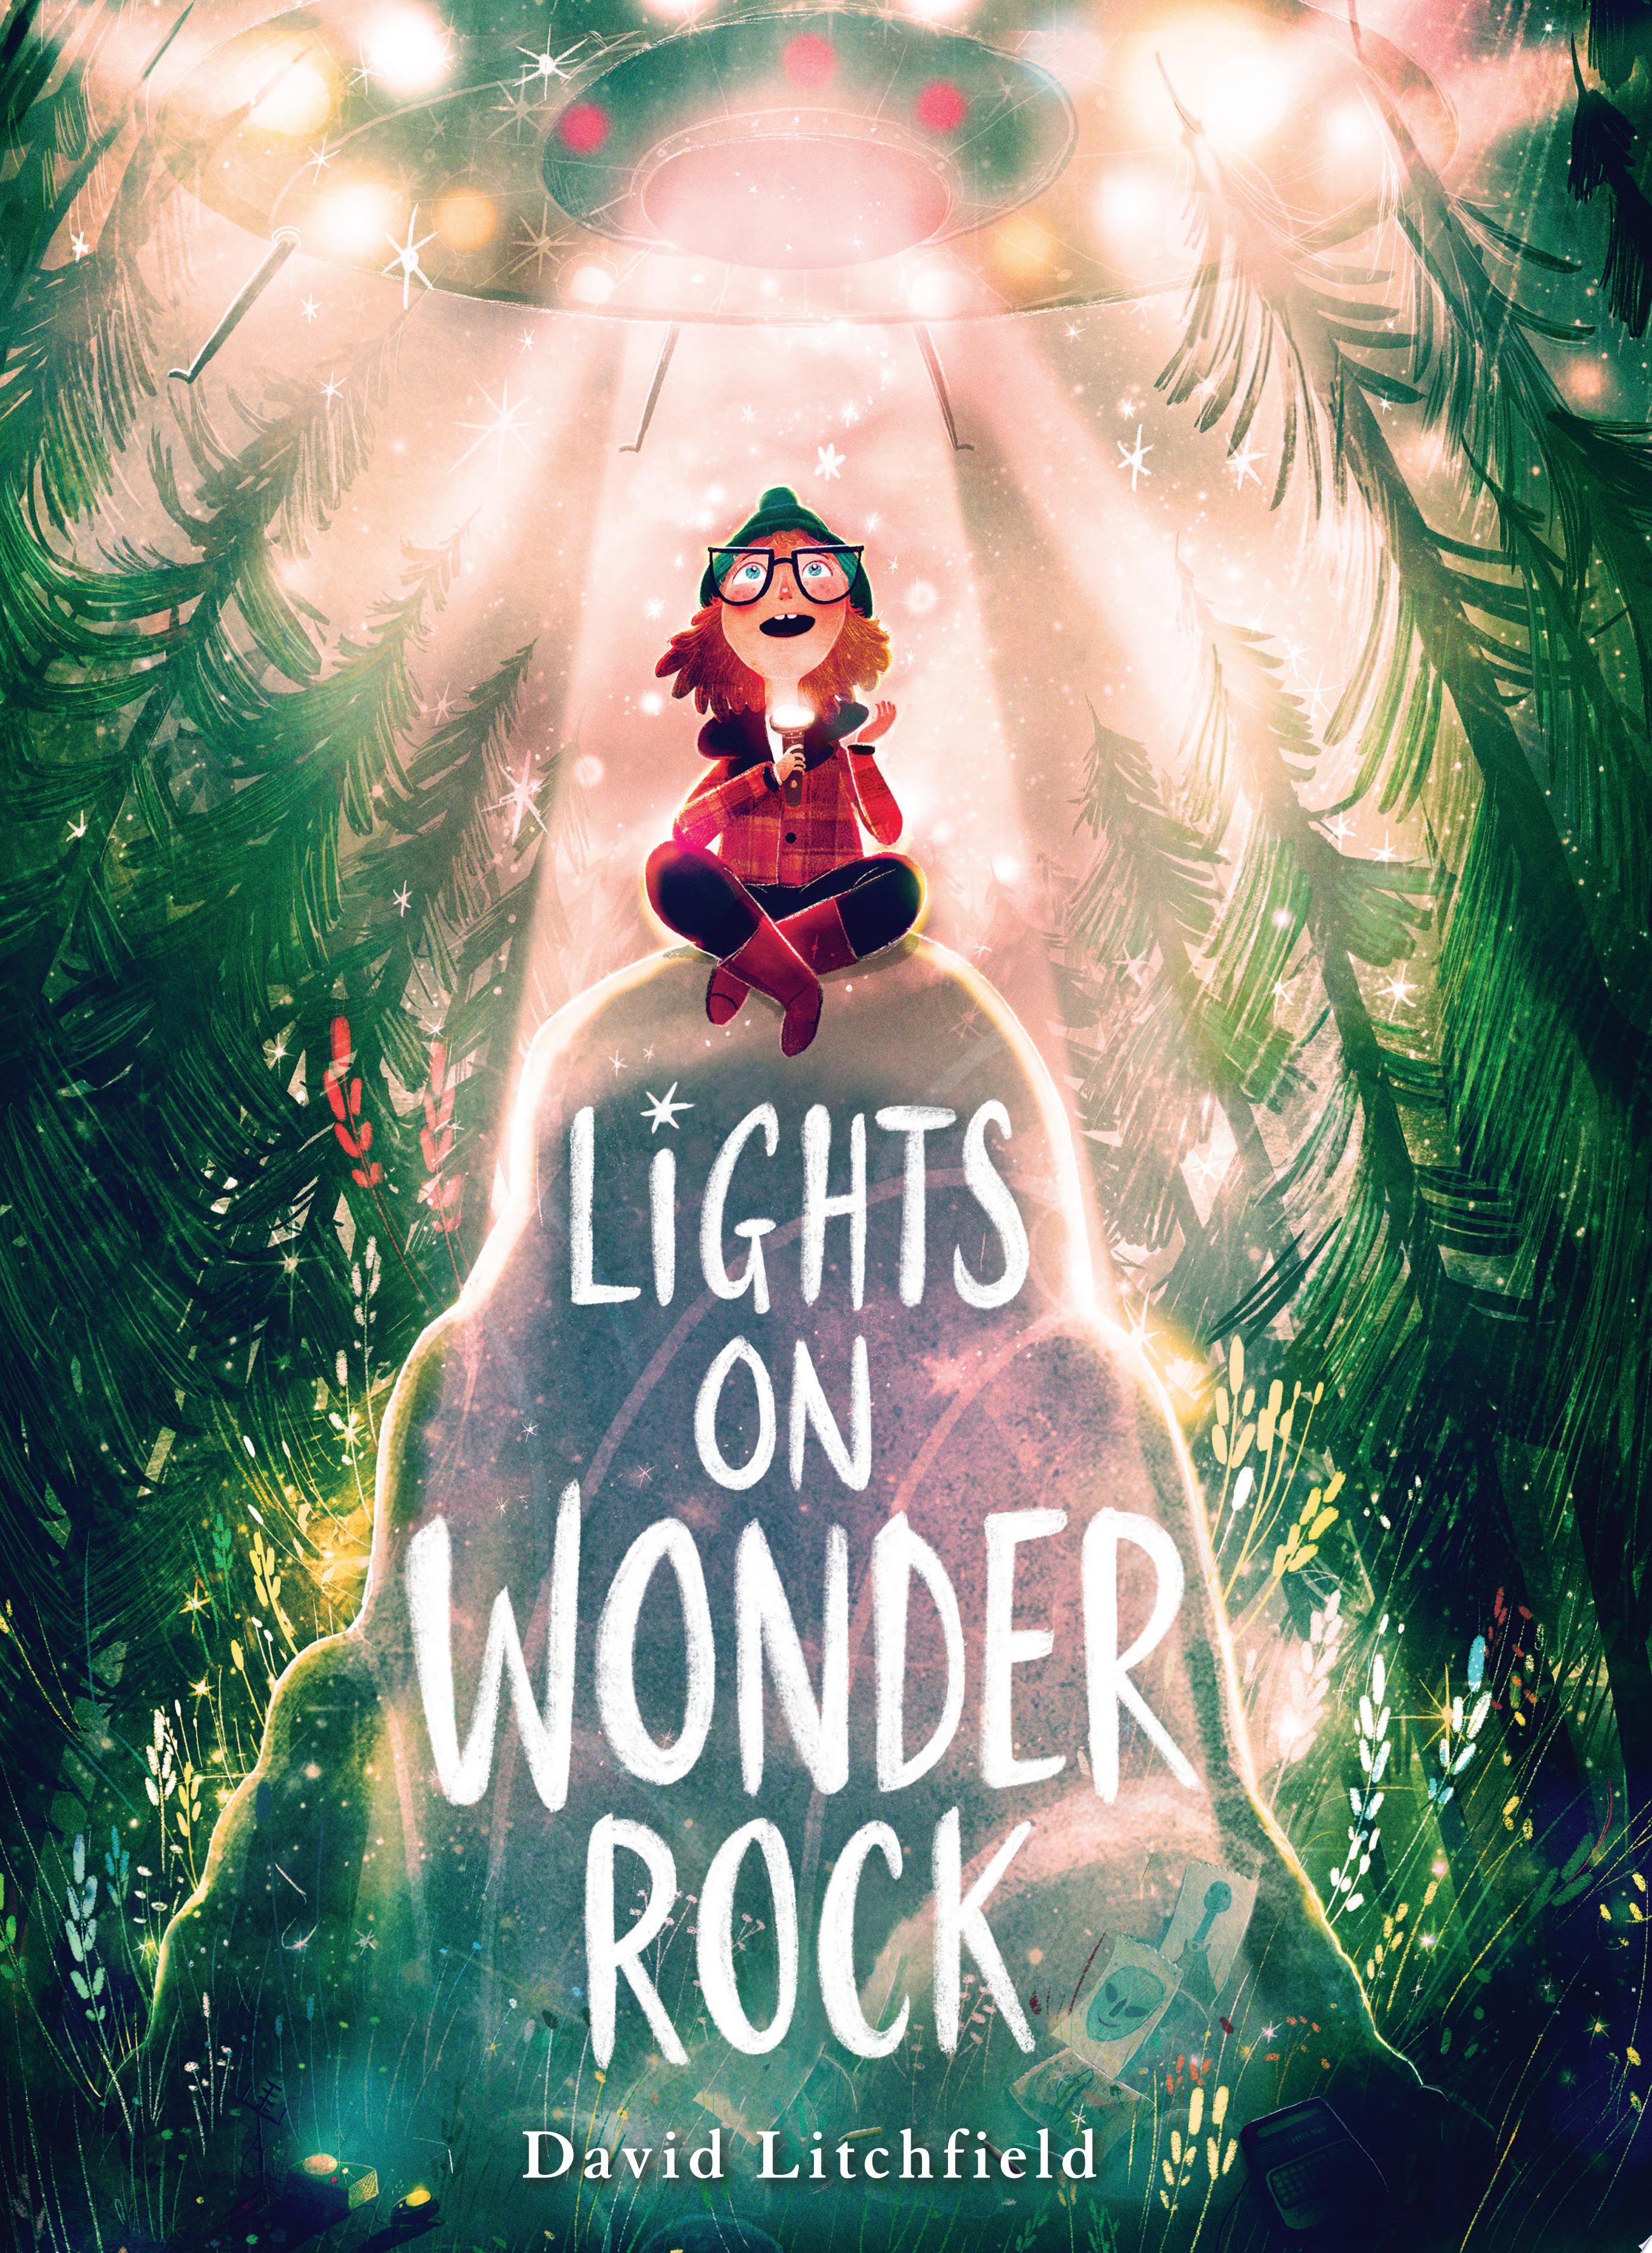 Image for "Lights on Wonder Rock"